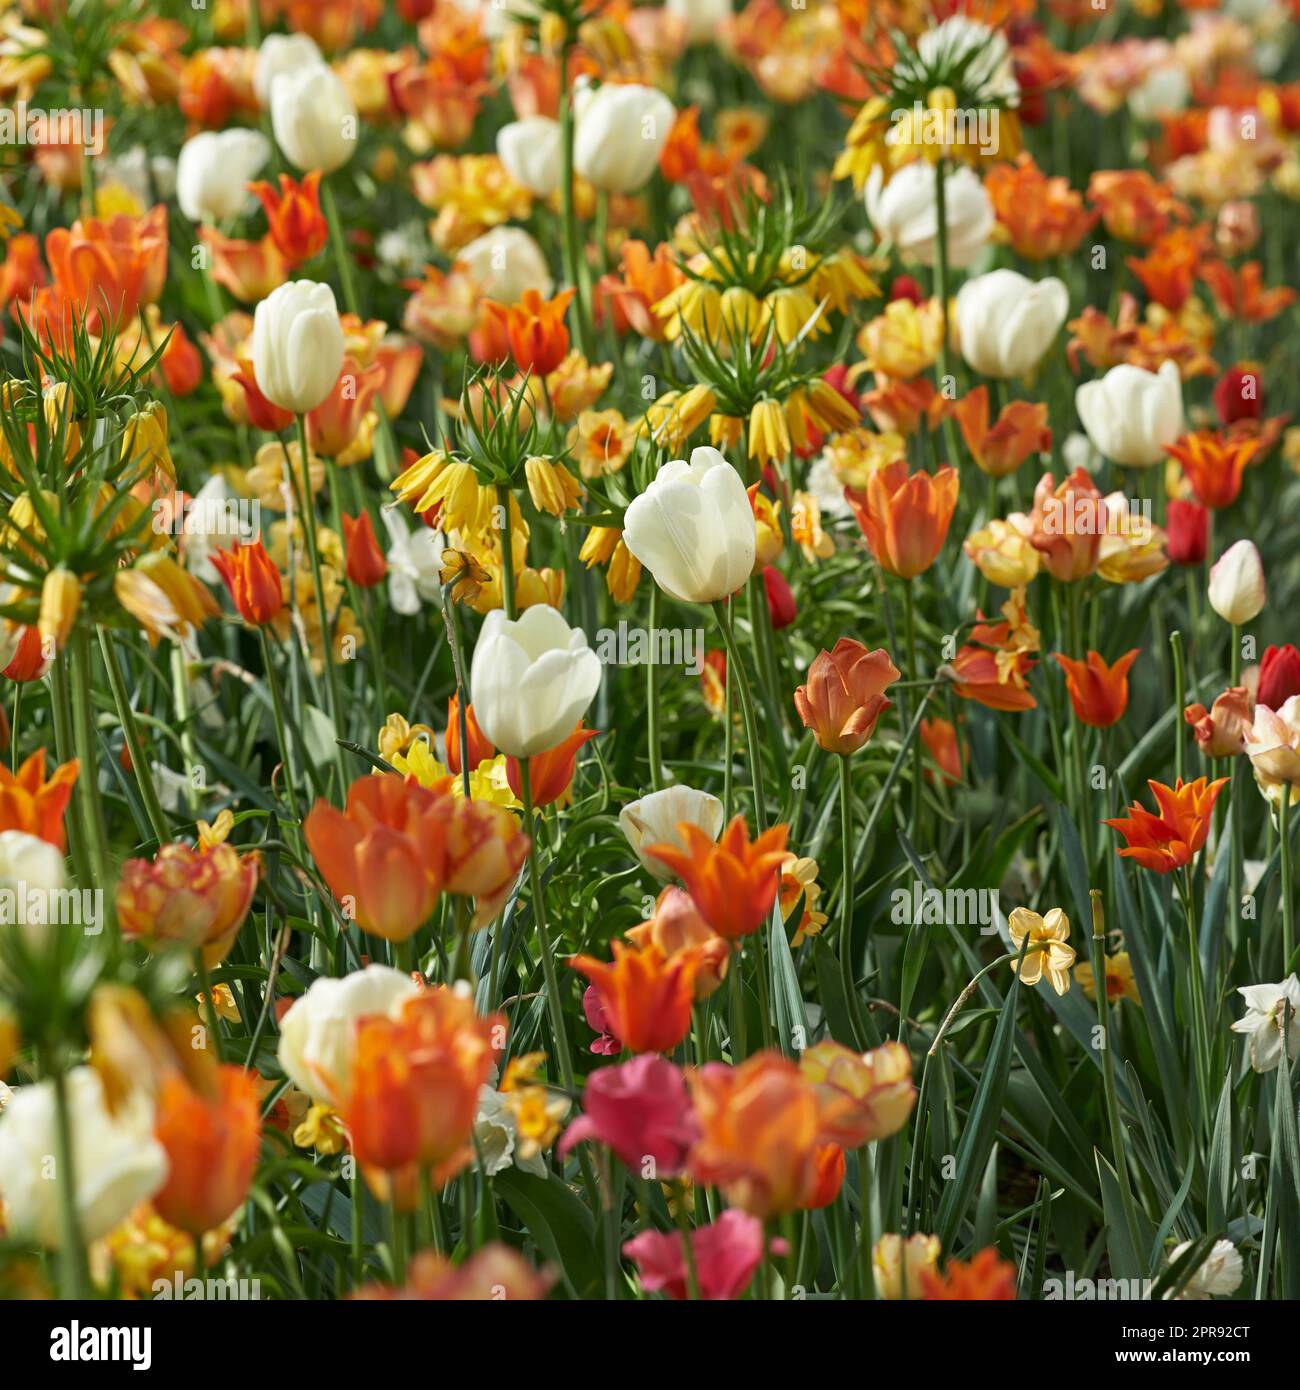 Campo de tulipanes y flores imperiales de la corona que crecen, florecen y florecen en exuberante prado verde o jardín cultivado. Manojo de plantas decorativas que florecen en el patio trasero ajardinado a través de la horticultura Foto de stock